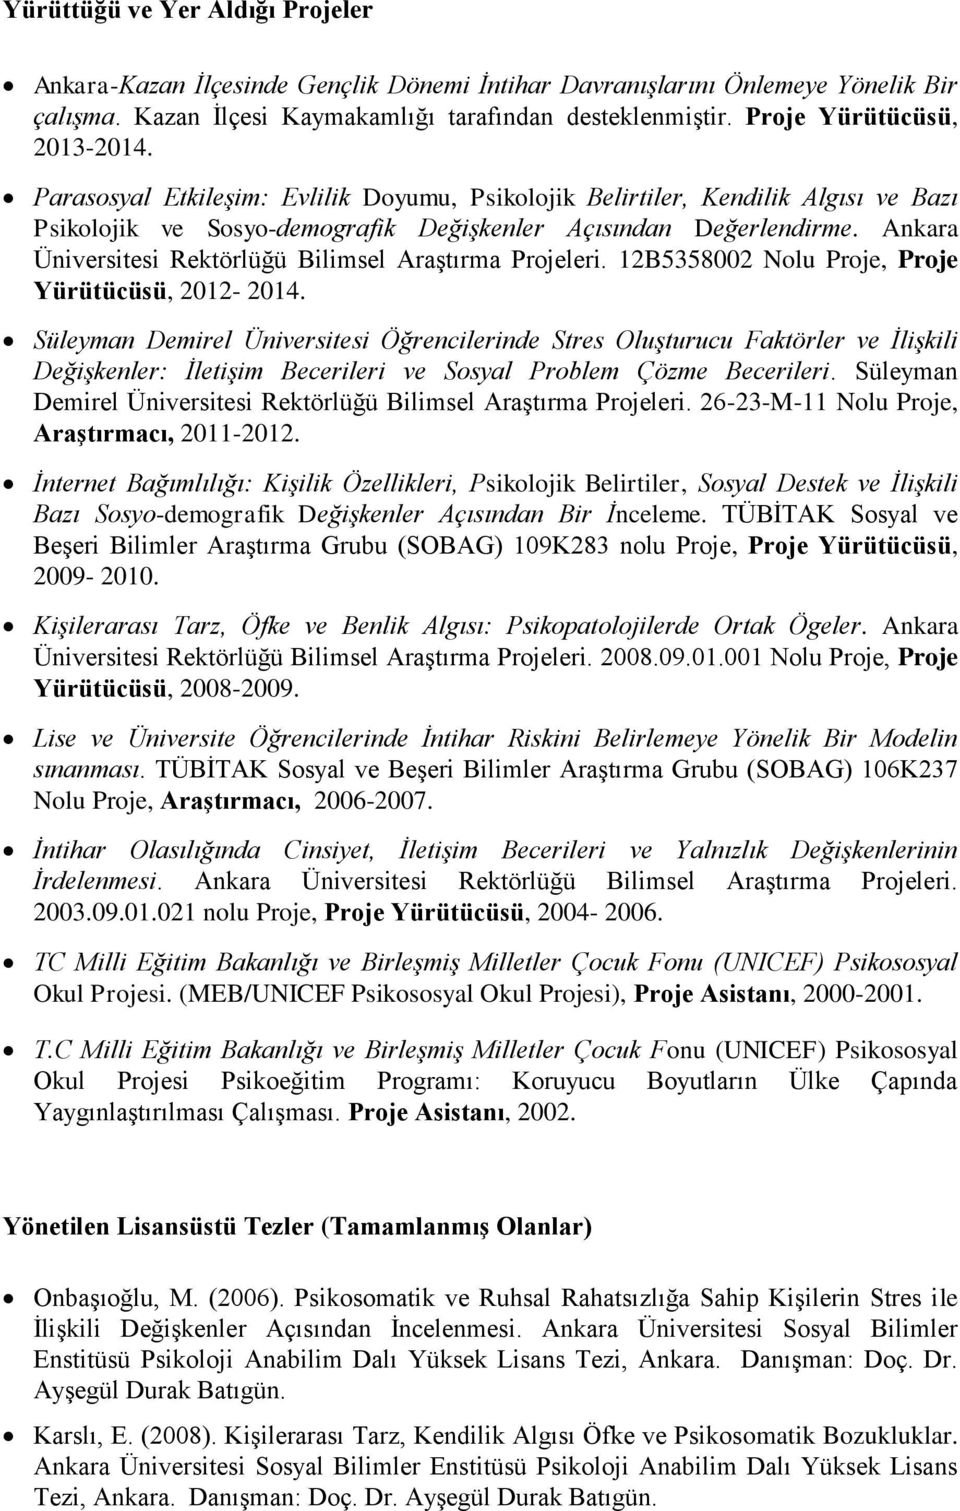 Ankara Üniversitesi Rektörlüğü Bilimsel Araştırma Projeleri. 12B5358002 Nolu Proje, Proje Yürütücüsü, 2012-2014.